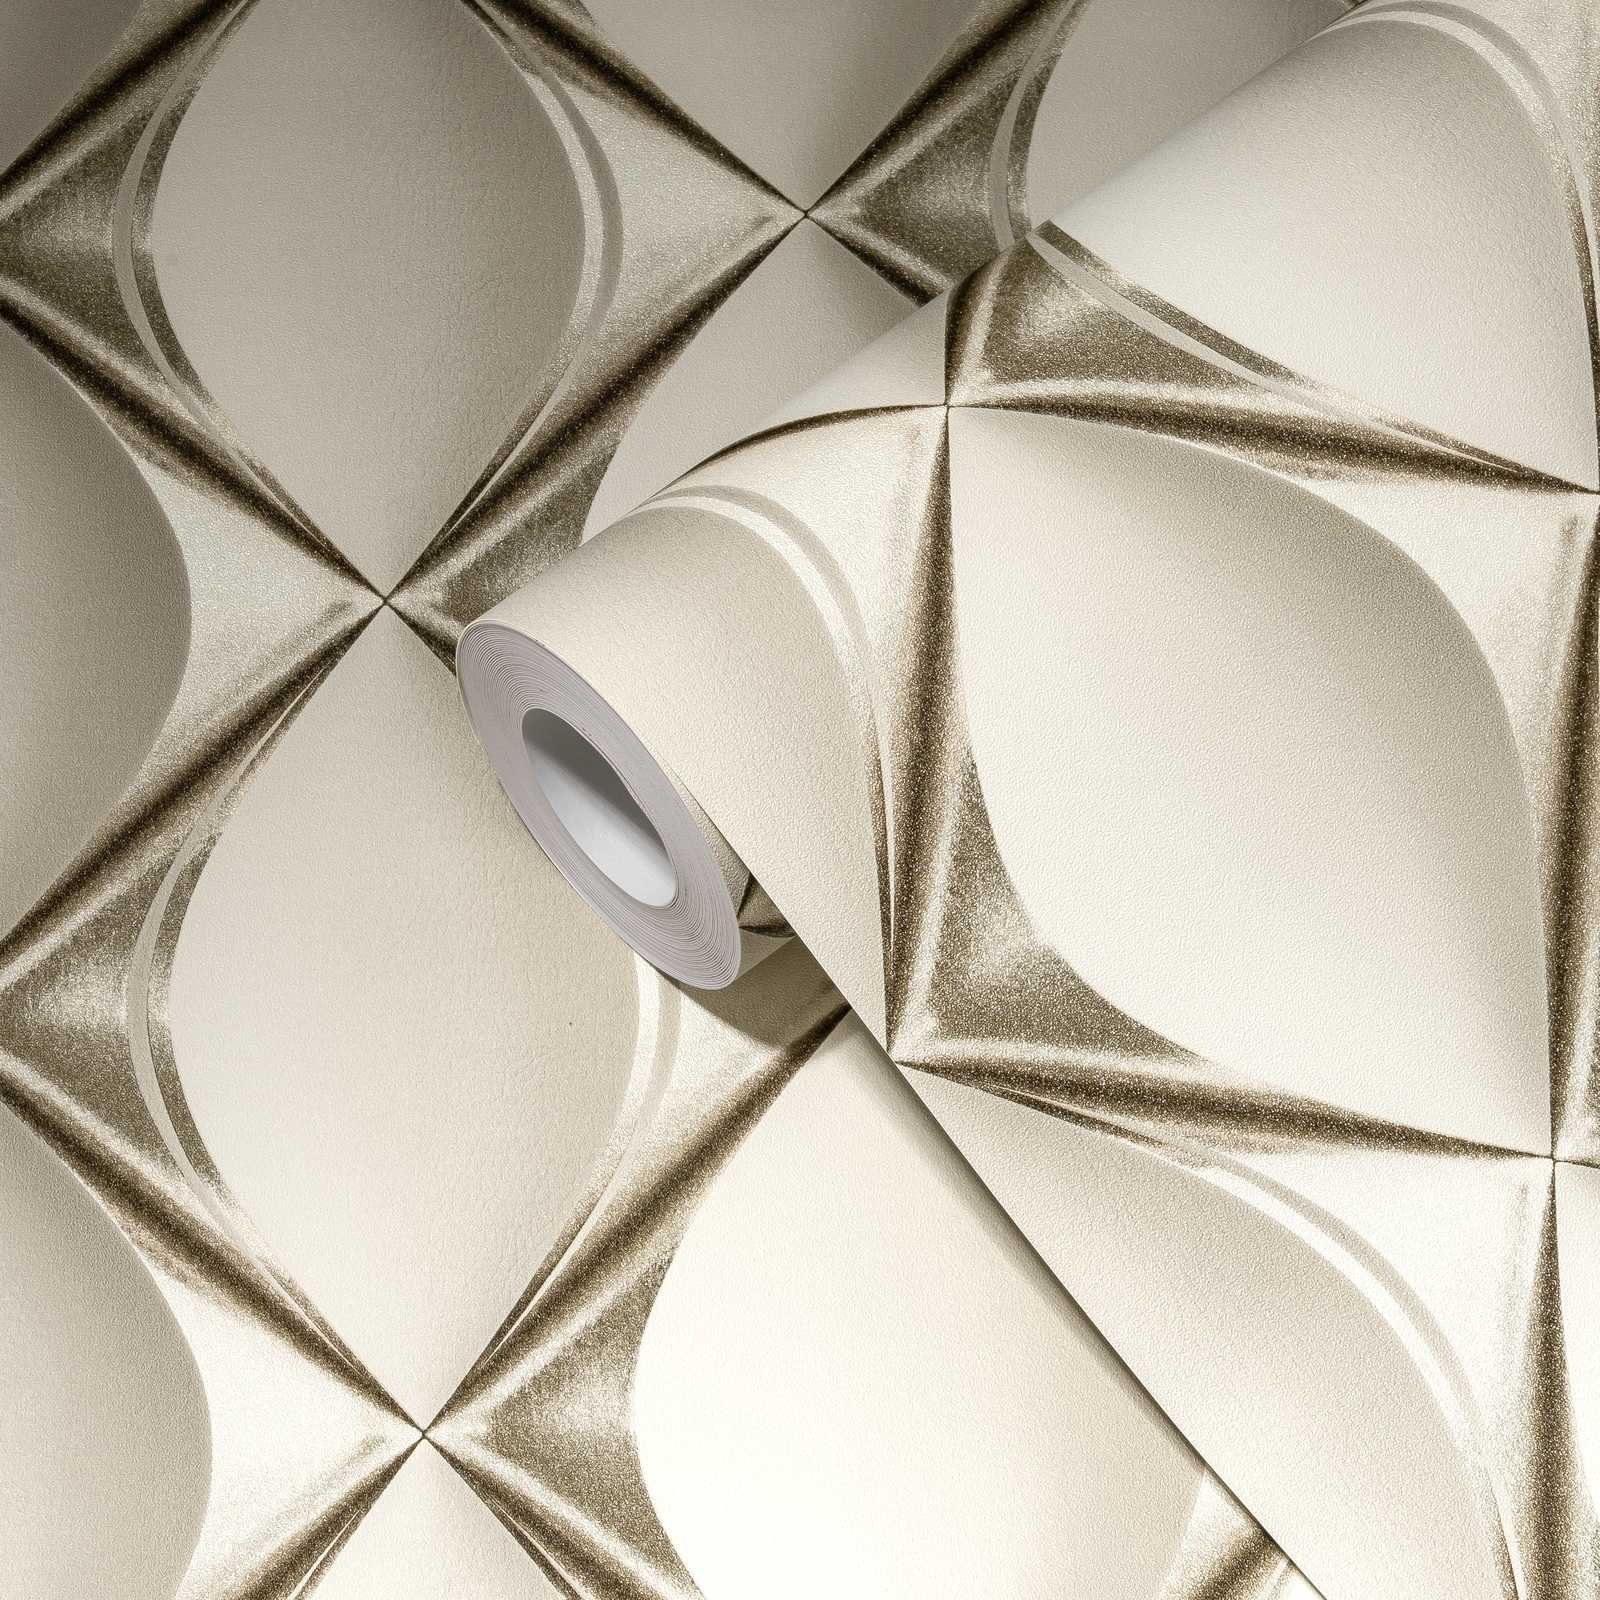             Papier peint 3D argenté-blanc avec design rétro - gris, métallique, beige
        